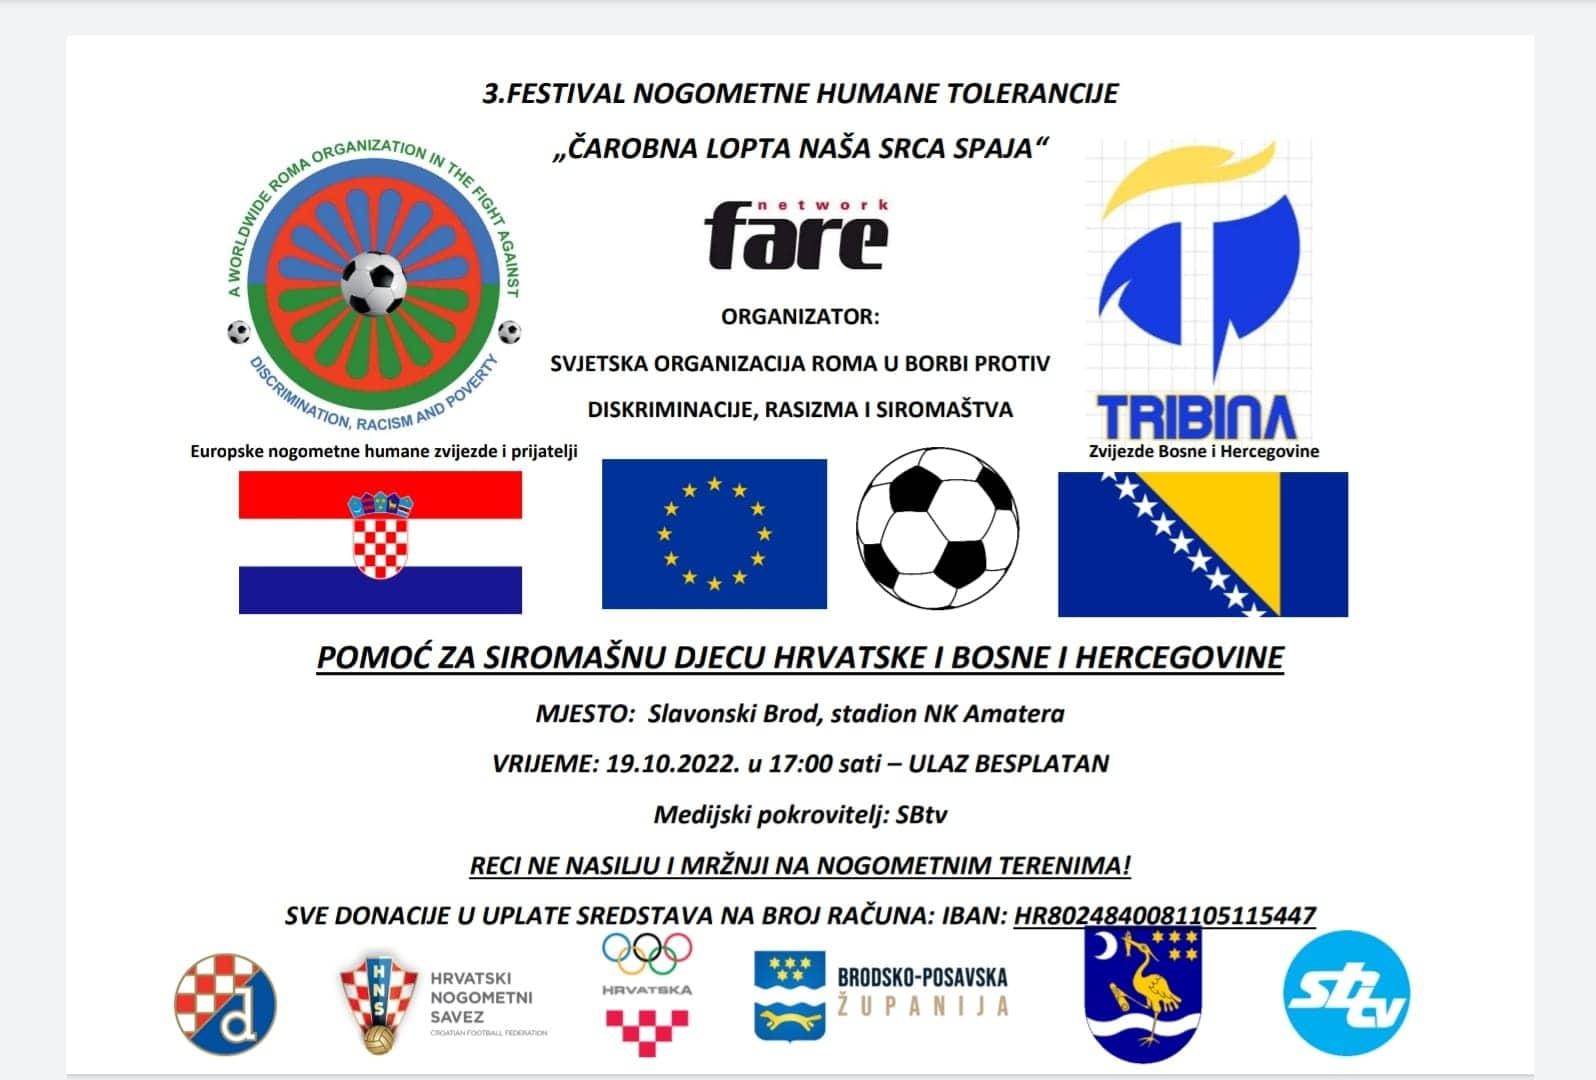 Organizator nogometnog spektala u Slavonskom Brodu (stadionu NK Amater - u 17 sati) je Svjetska asocijacija Roma - Avaz